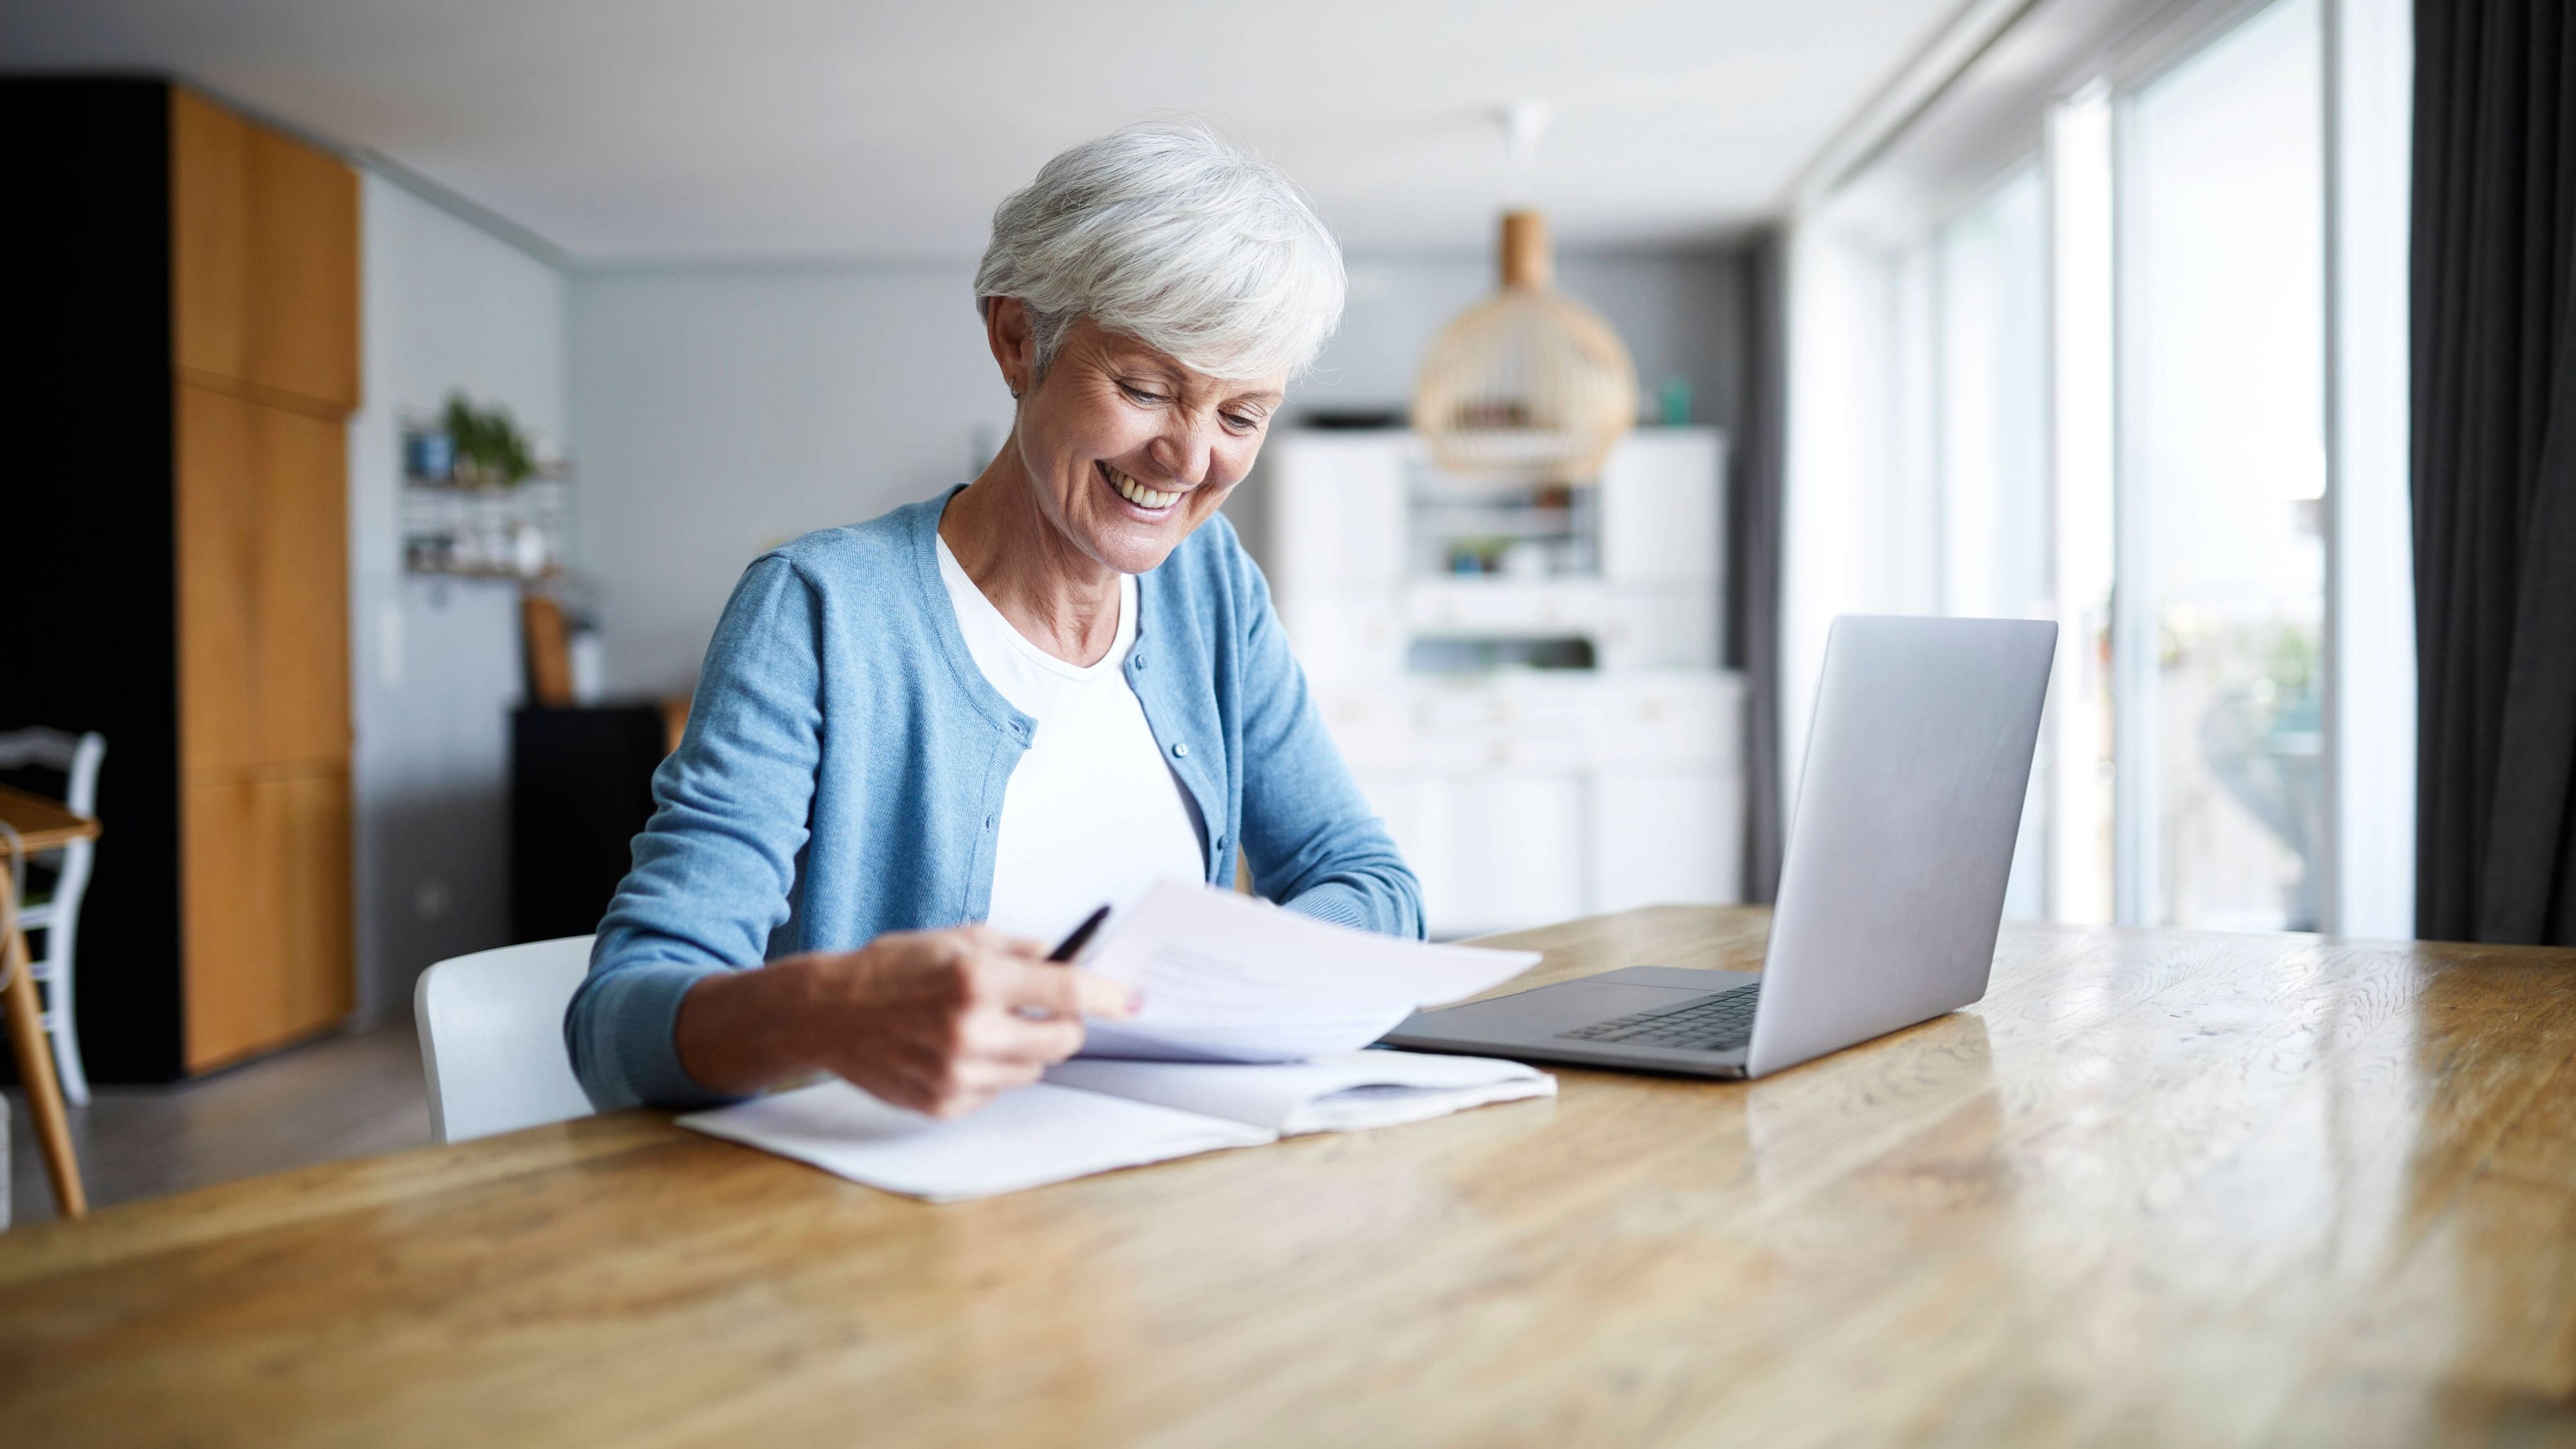 Steuererklärung als Rentner: Welche Unterlagen brauche ich?